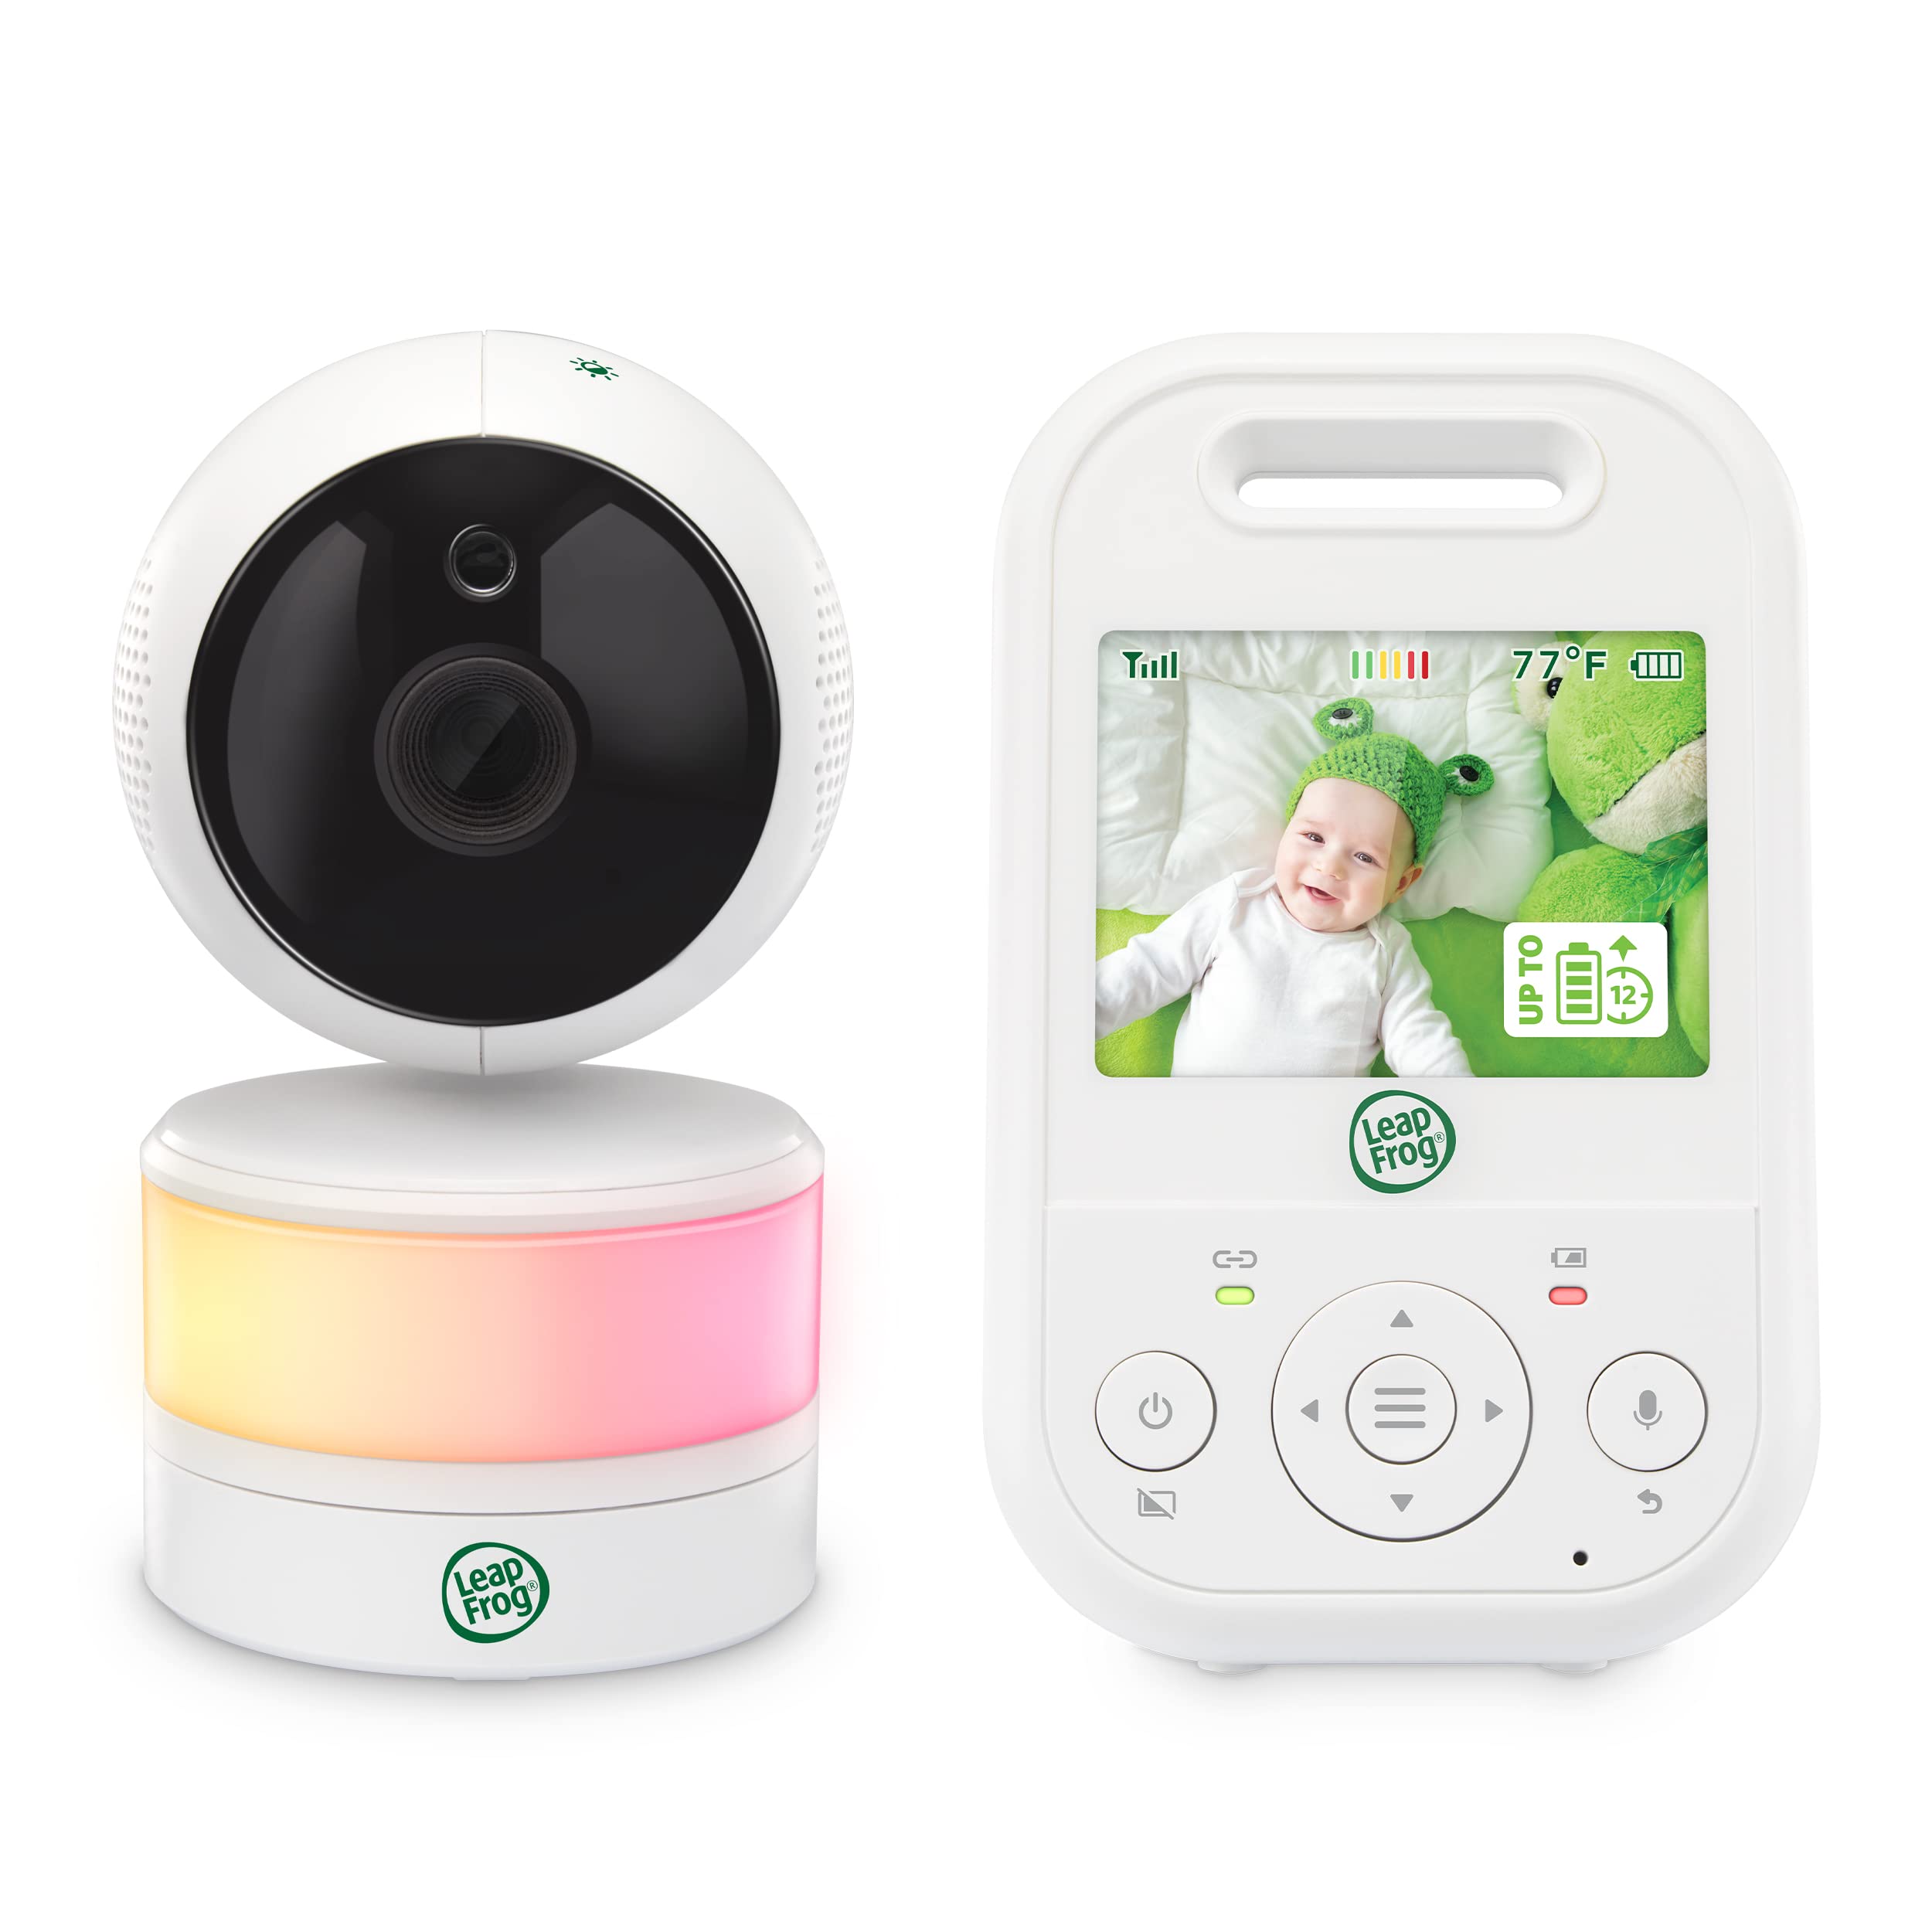 LeapFrog LF2513 Babyphone mit Kamera, Schwenk- und Neige Video Baby Monitor, 2.8 Inch Display, Nachtsicht, 300 m große Reichweite,12H Lange Akkulaufzeit Babyphone,Beruhigende Schlaflieder, 1080p